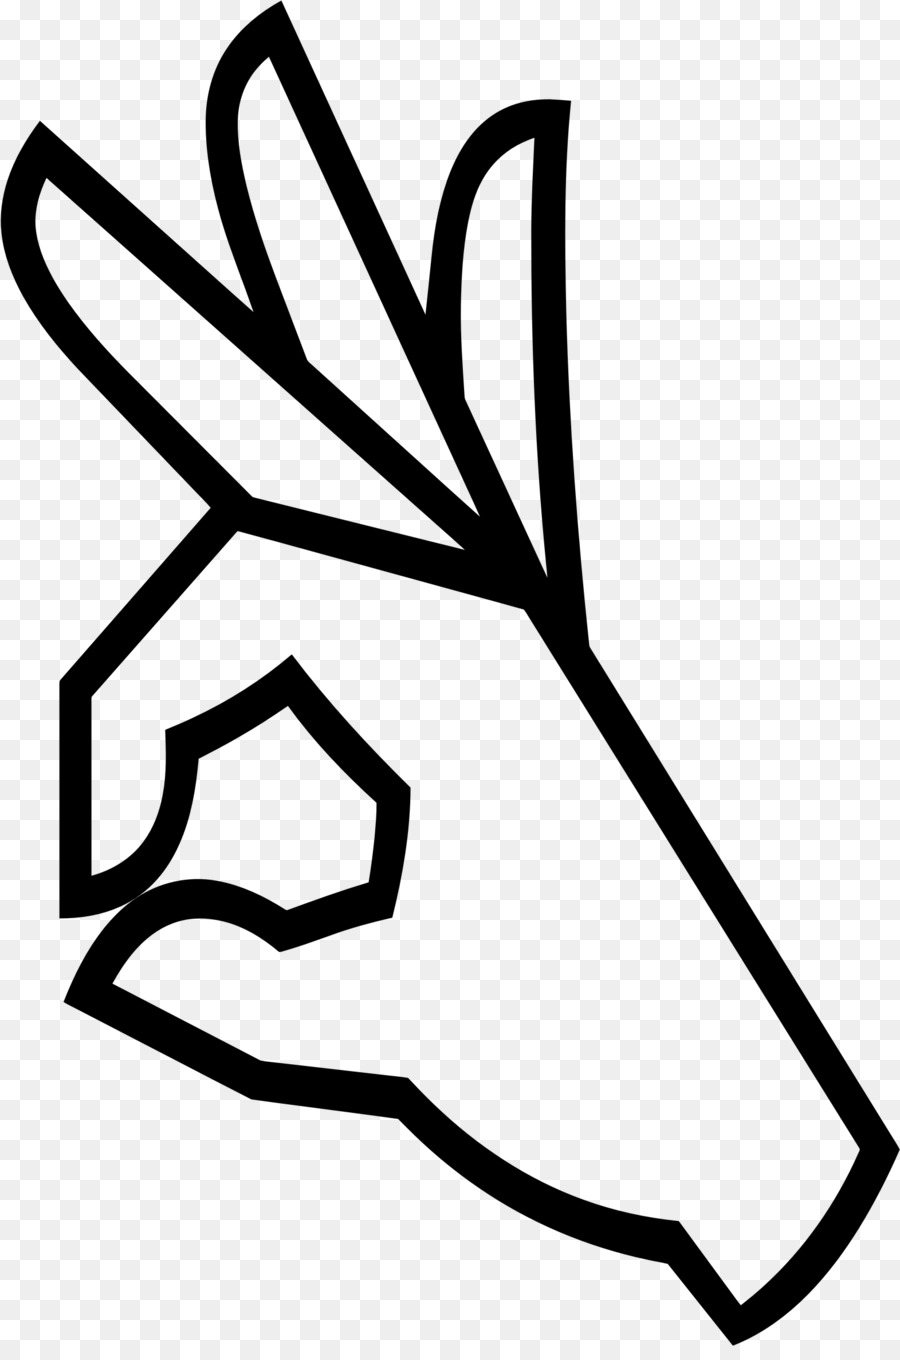 OK Simbolo della Mano di lingua dei segni - ok